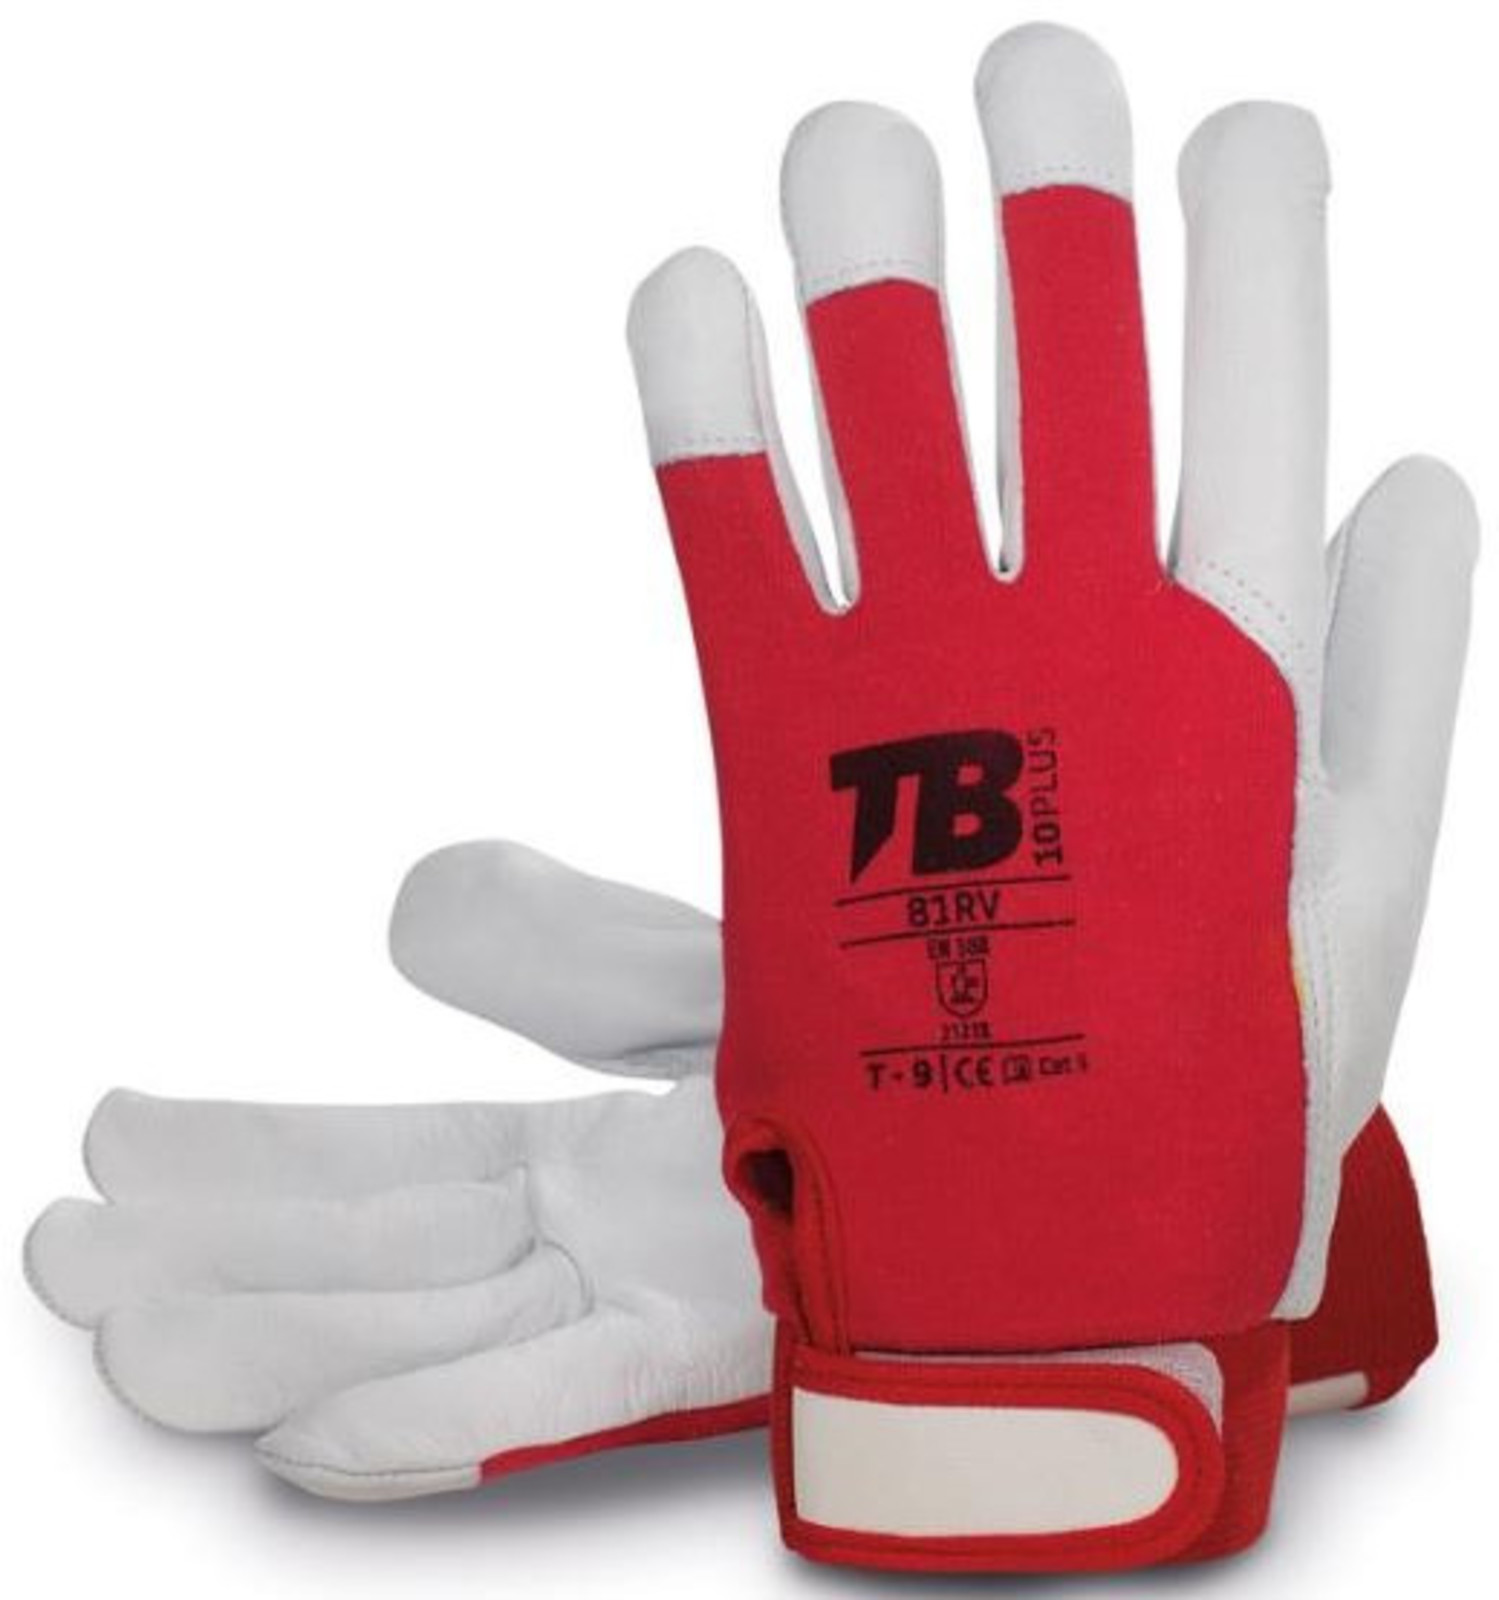 Pracovné rukavice TB 81RV kombinované - veľkosť: 10/XL